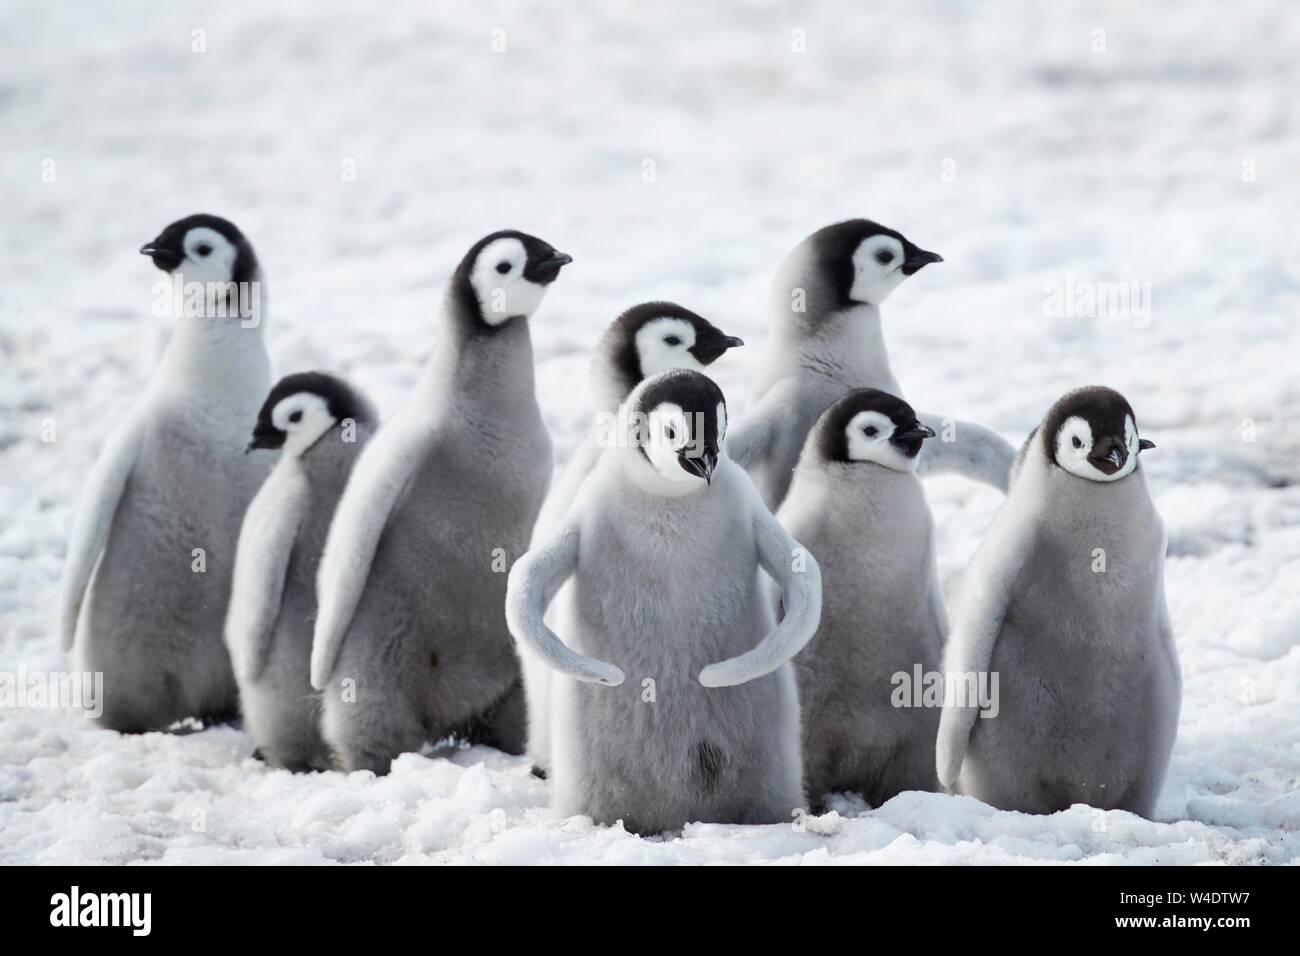 Pinguini imperatore (Aptenodytes forsteri), un gruppo di pulcini sul ghiaccio, Snow Hill Island, Mare di Weddell, Antartide Foto Stock